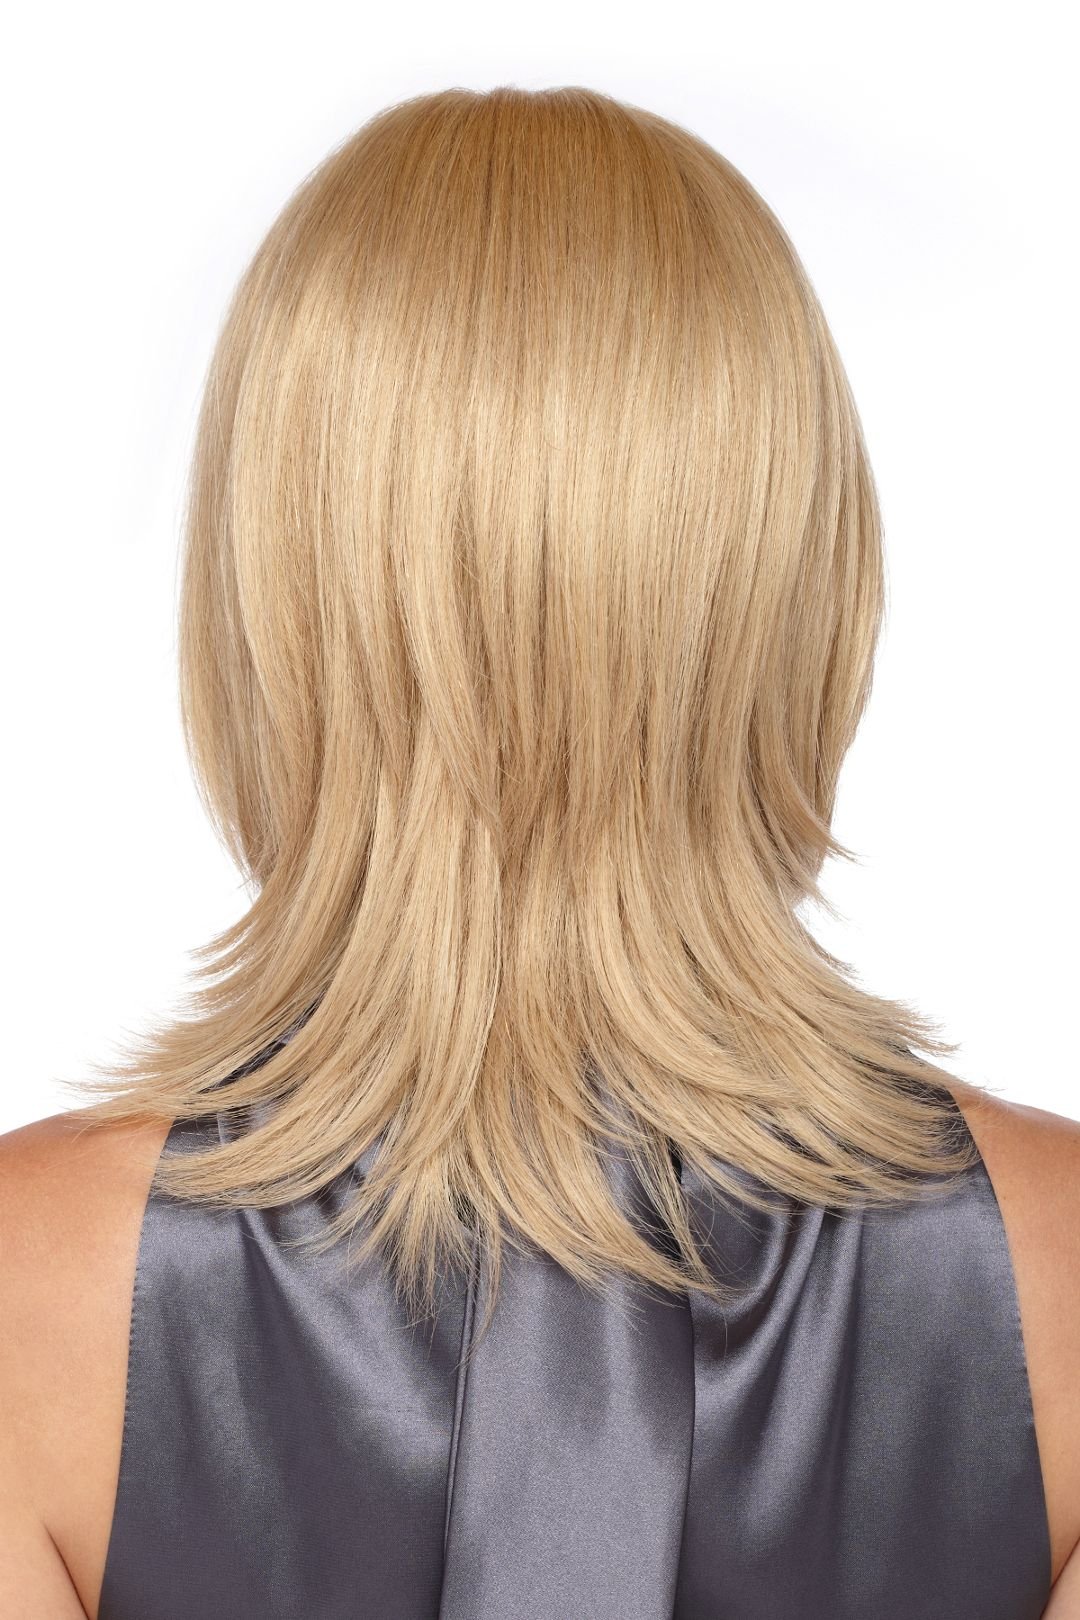 Каскад на средние волосы фото с косой челкой вид сзади и спереди